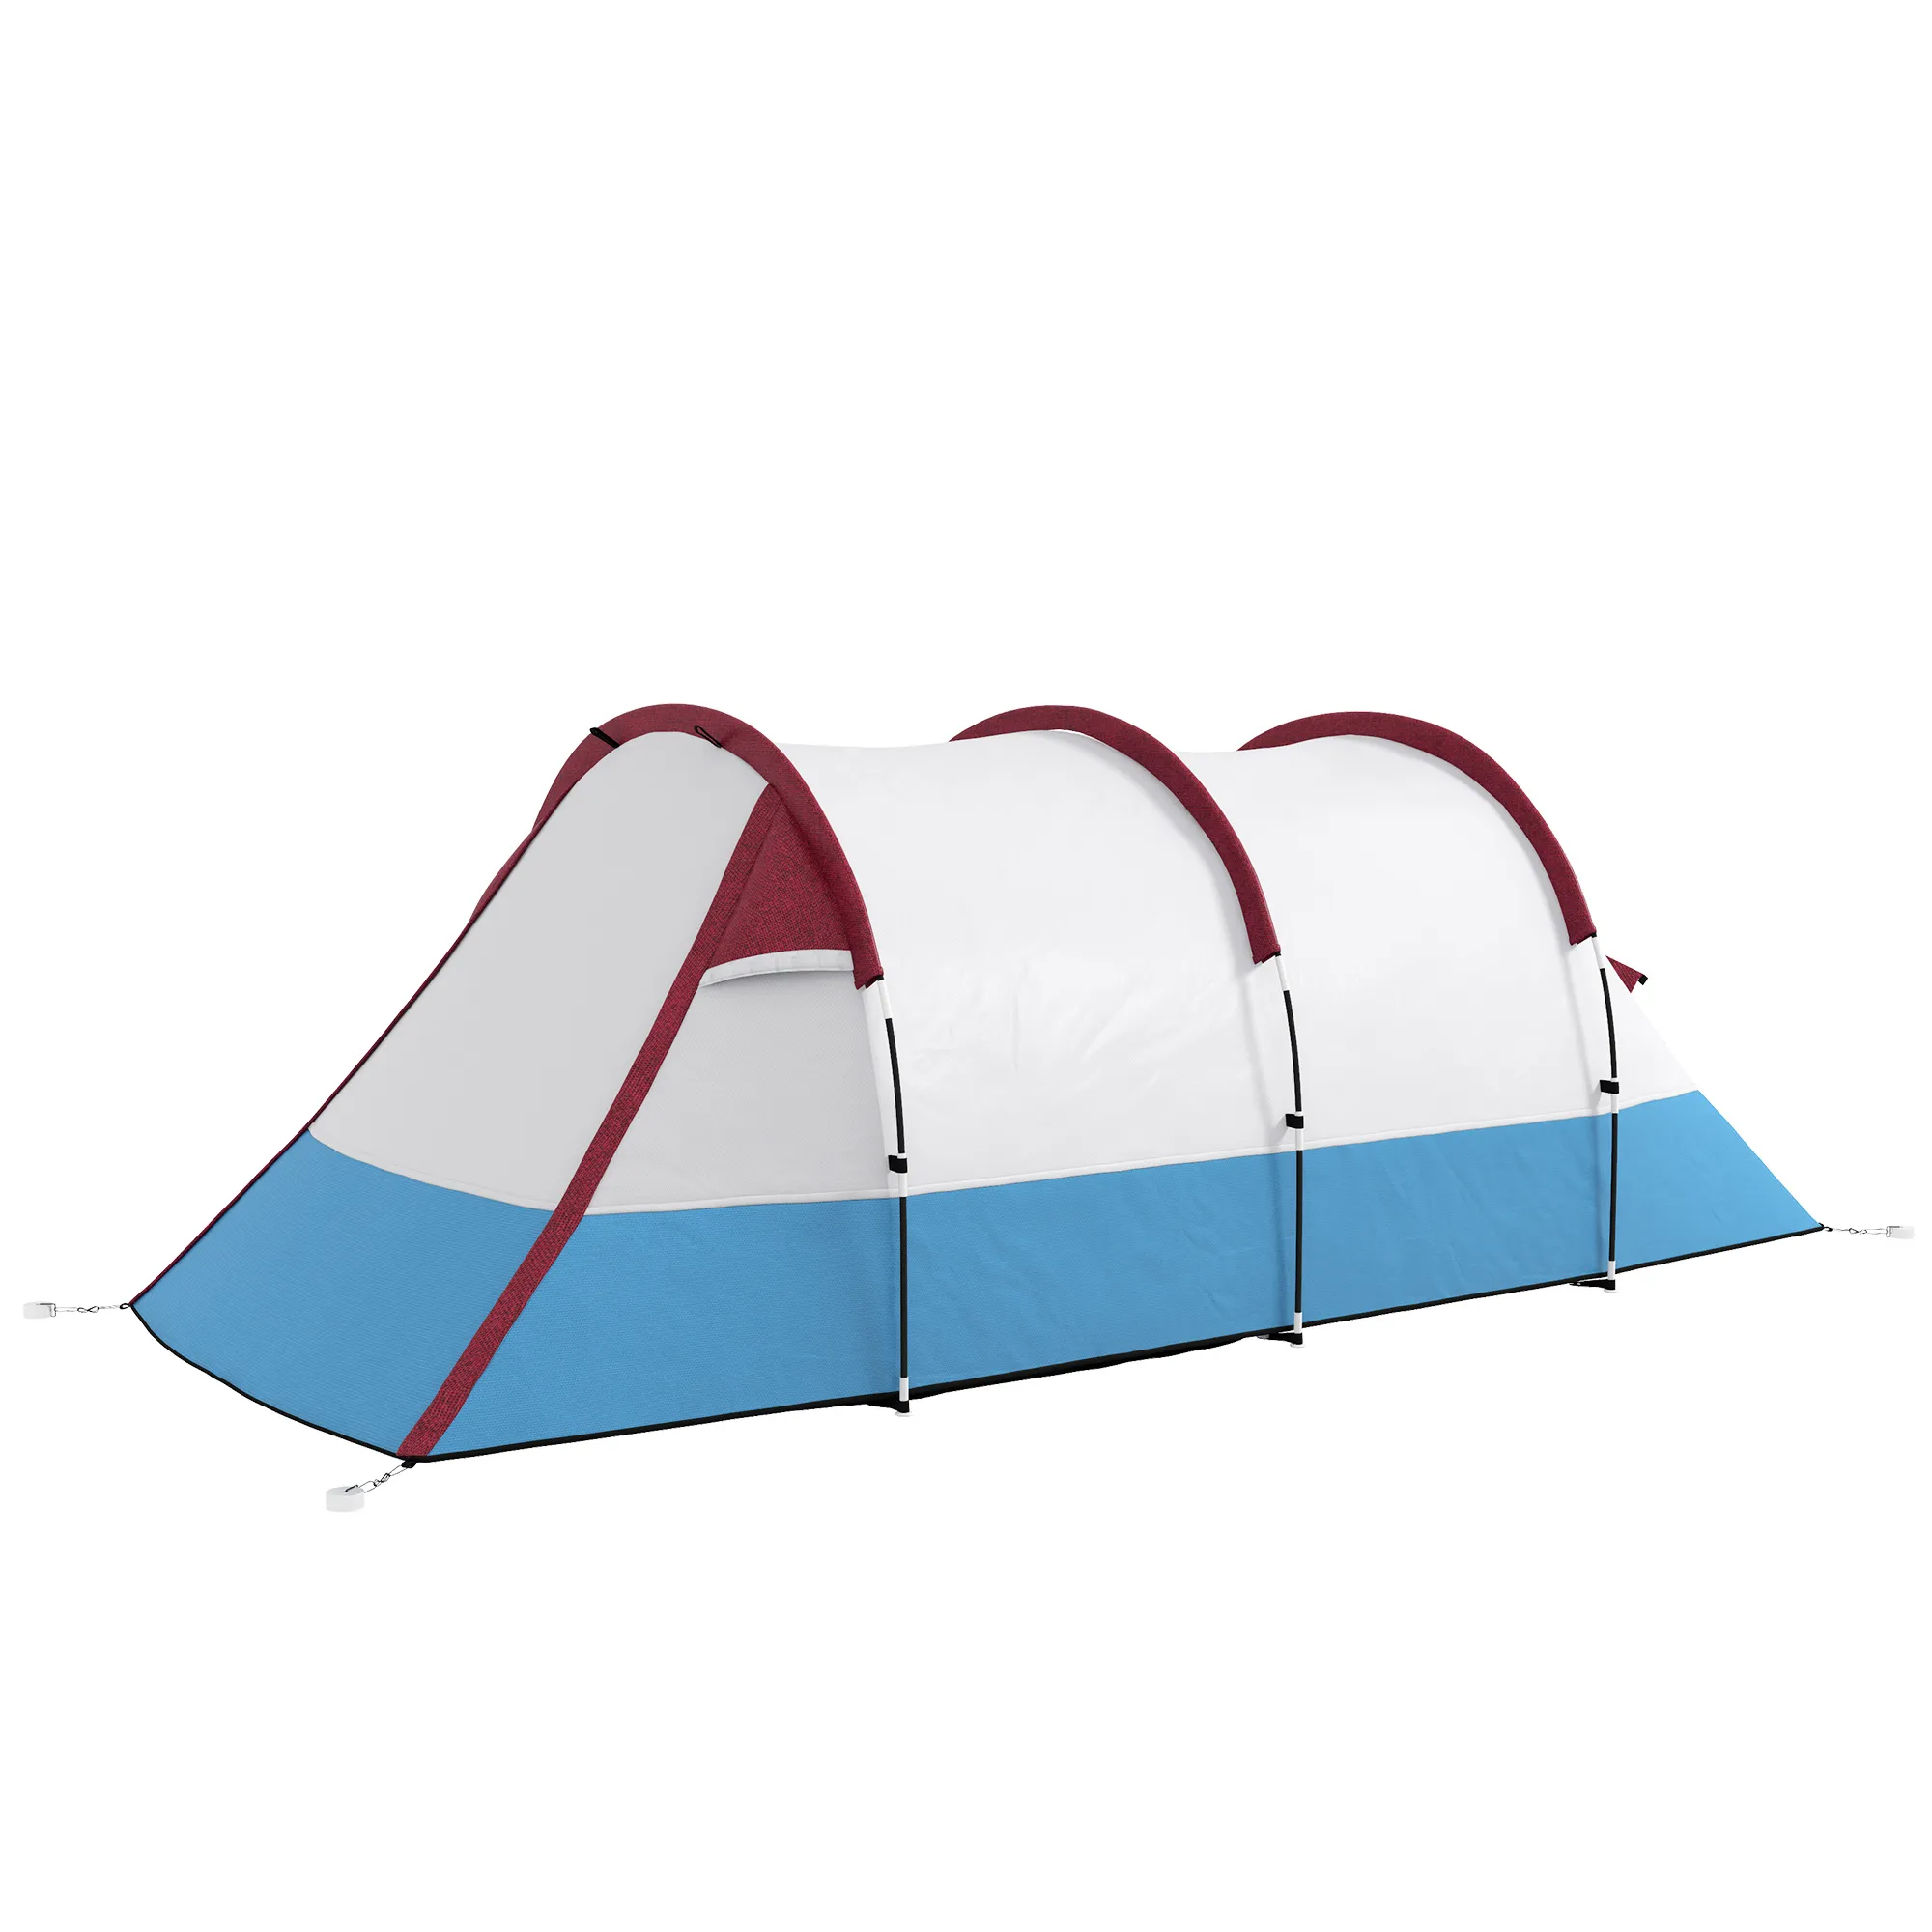  Tenda da Campeggio Impermeabile con 2 Aree e 3 Ingressi, in Poliestere e Fibra di Vetro, 420x200x150 cm, Rosso